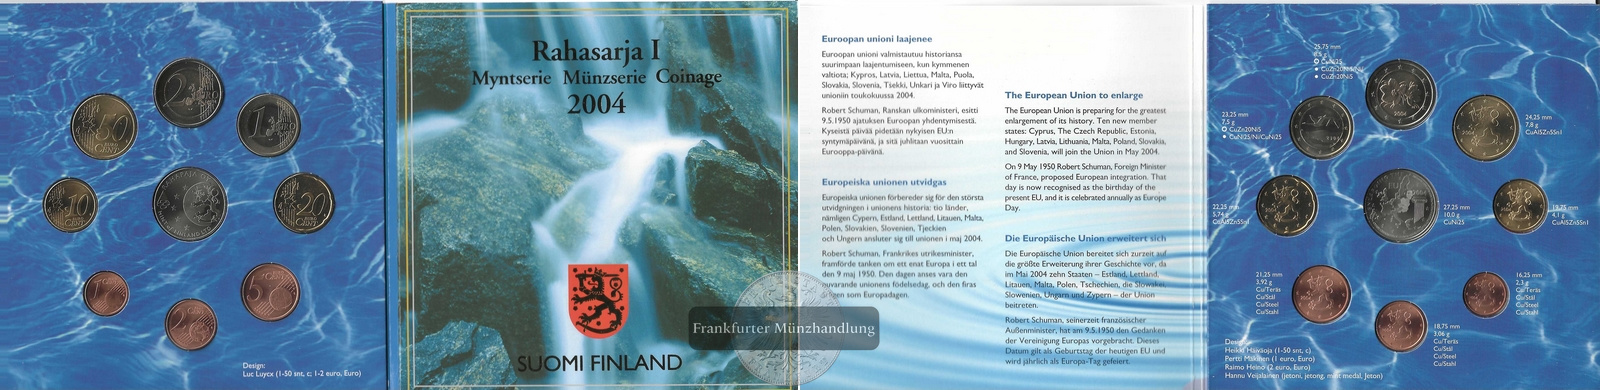  Finnland Rahasarja I Myntserie Coinage 2004 Euro-Kursmünzensatz EU-Erweiterung  FM-Frankfurt   